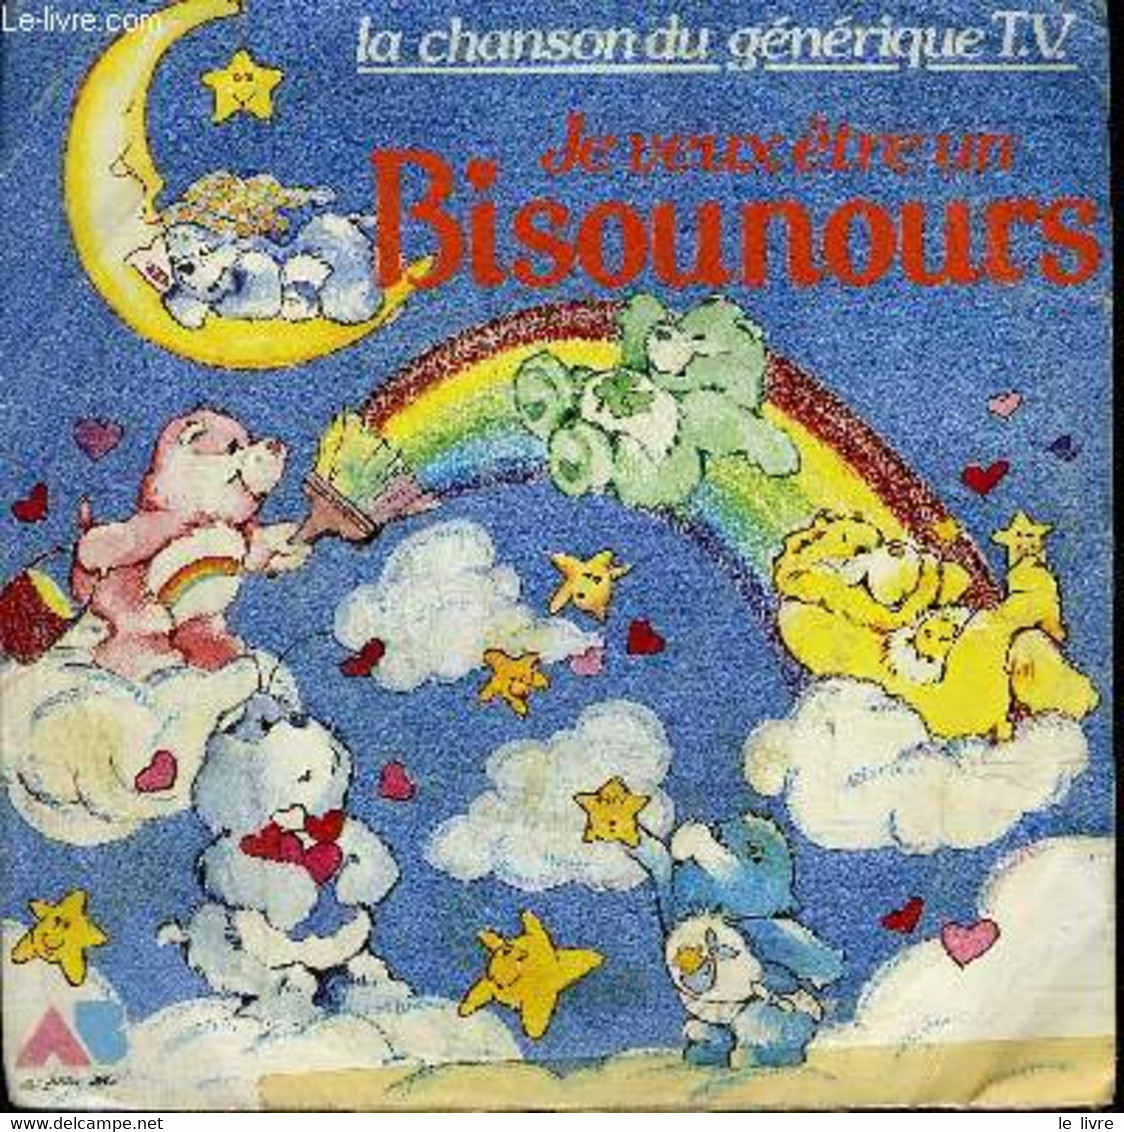 Disque 45t // Je Veux être Un Bisounours - Non Renseigné - 1986 - 45 Rpm - Maxi-Singles